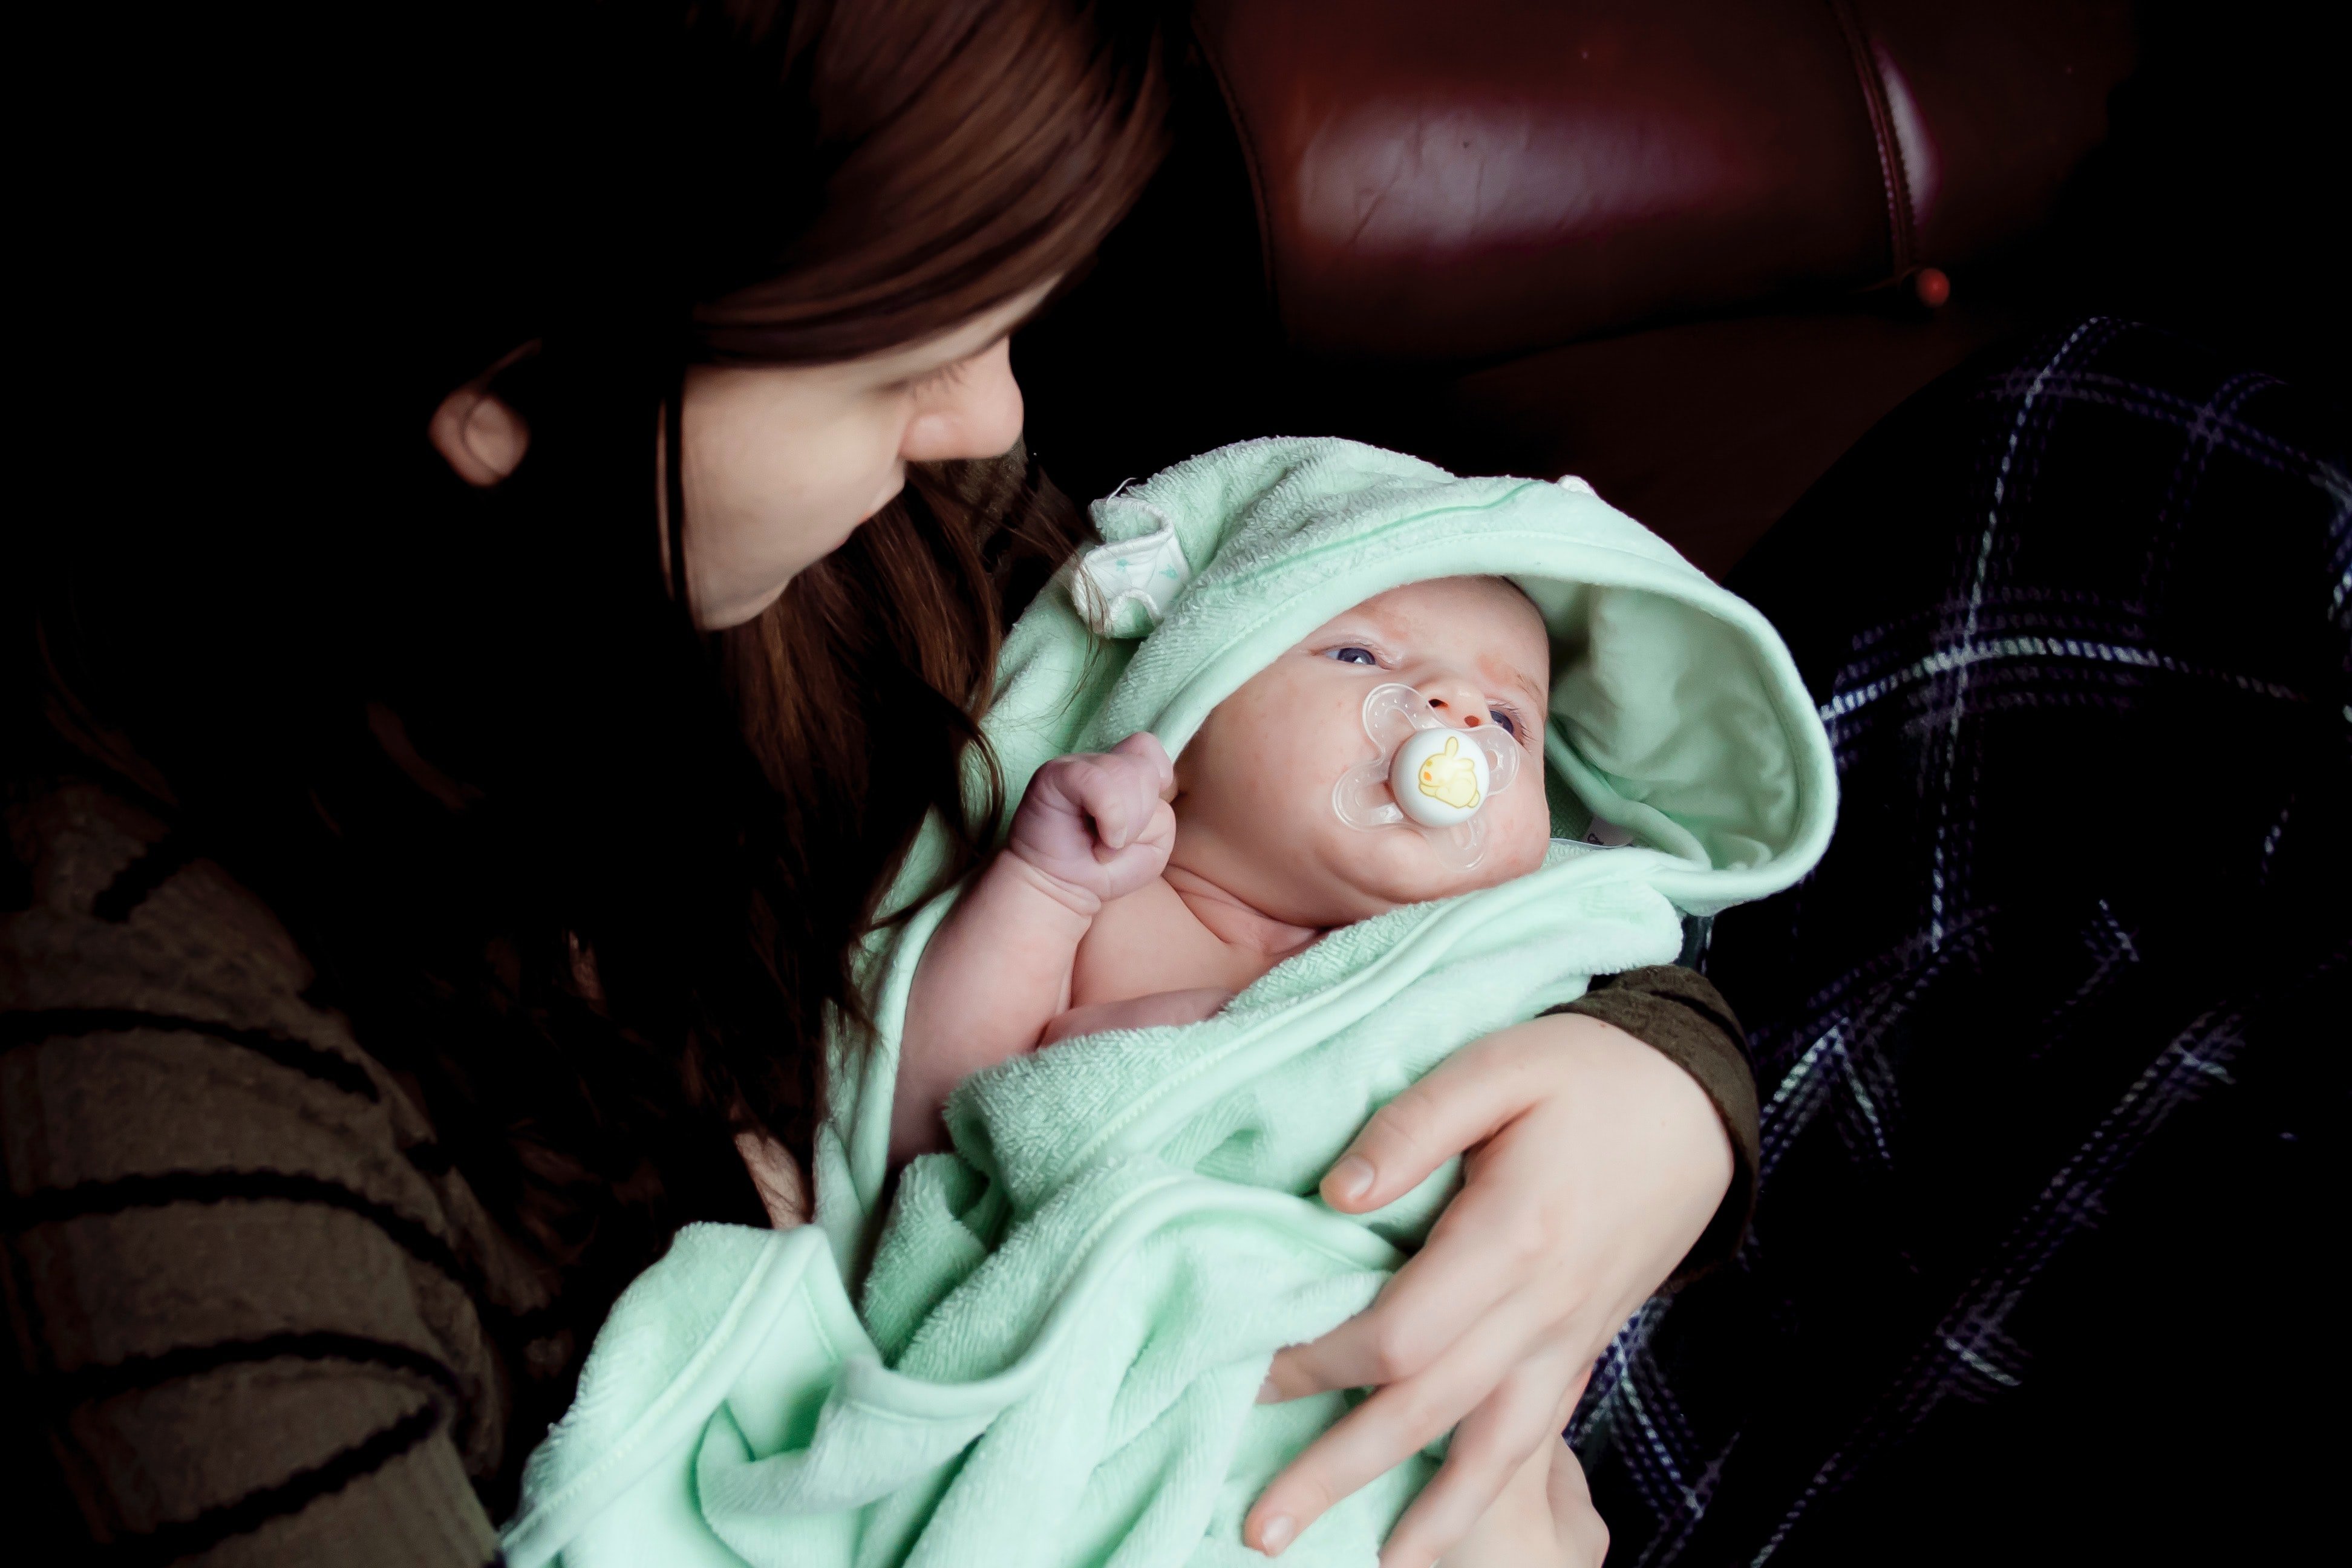 OP a continué à mener un combat courageux pour construire un meilleur avenir pour son bébé. | Source : Unsplash